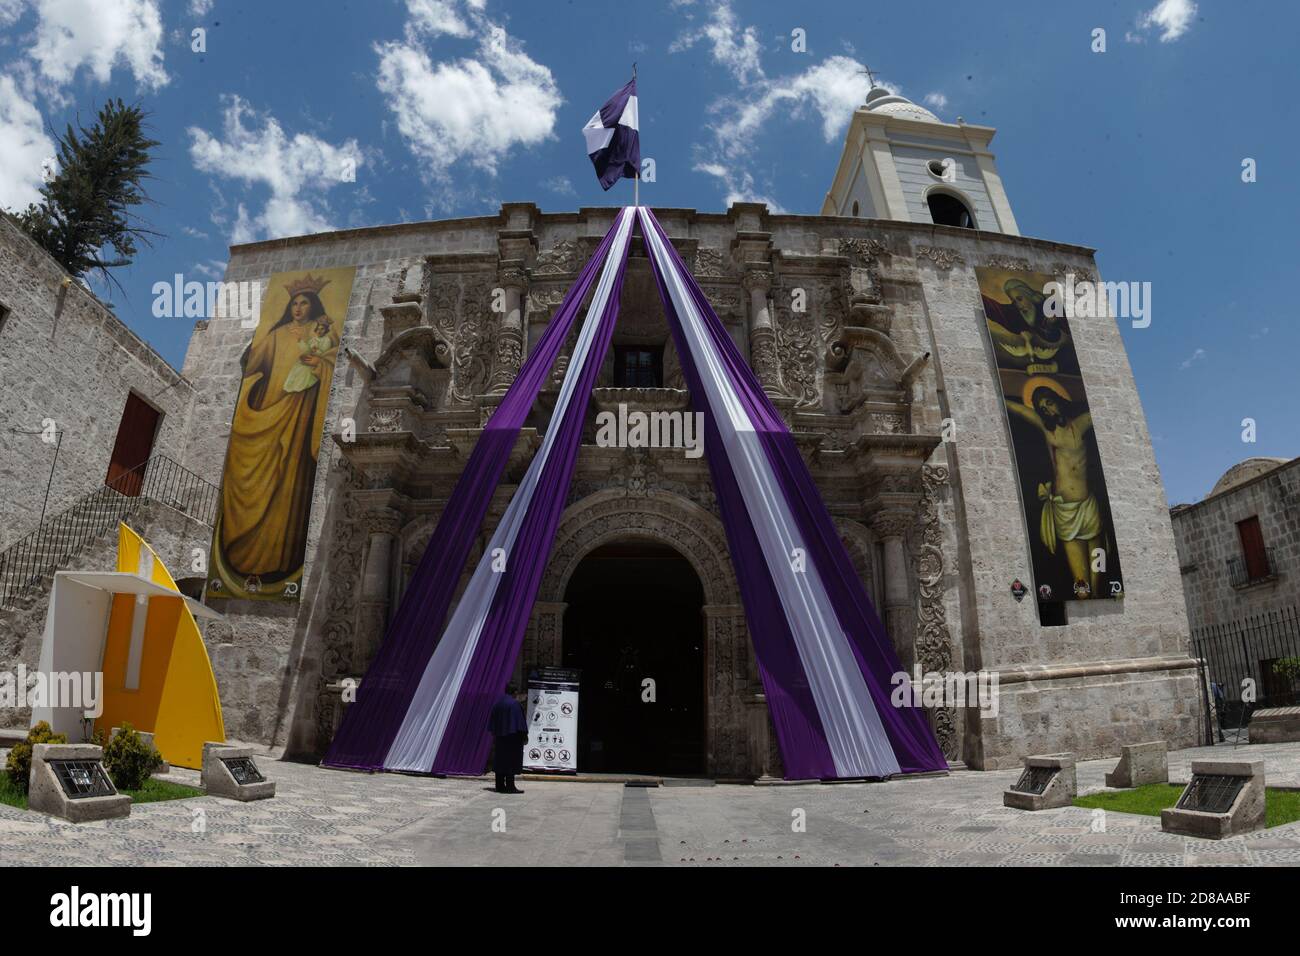 I credenti nel 'Signore dei Miracoli' vengono al tempio di San Agustín (Arequipa) per pregare l'immagine del 'Cristo viola'. Tutti i protocolli di salute wer Foto Stock